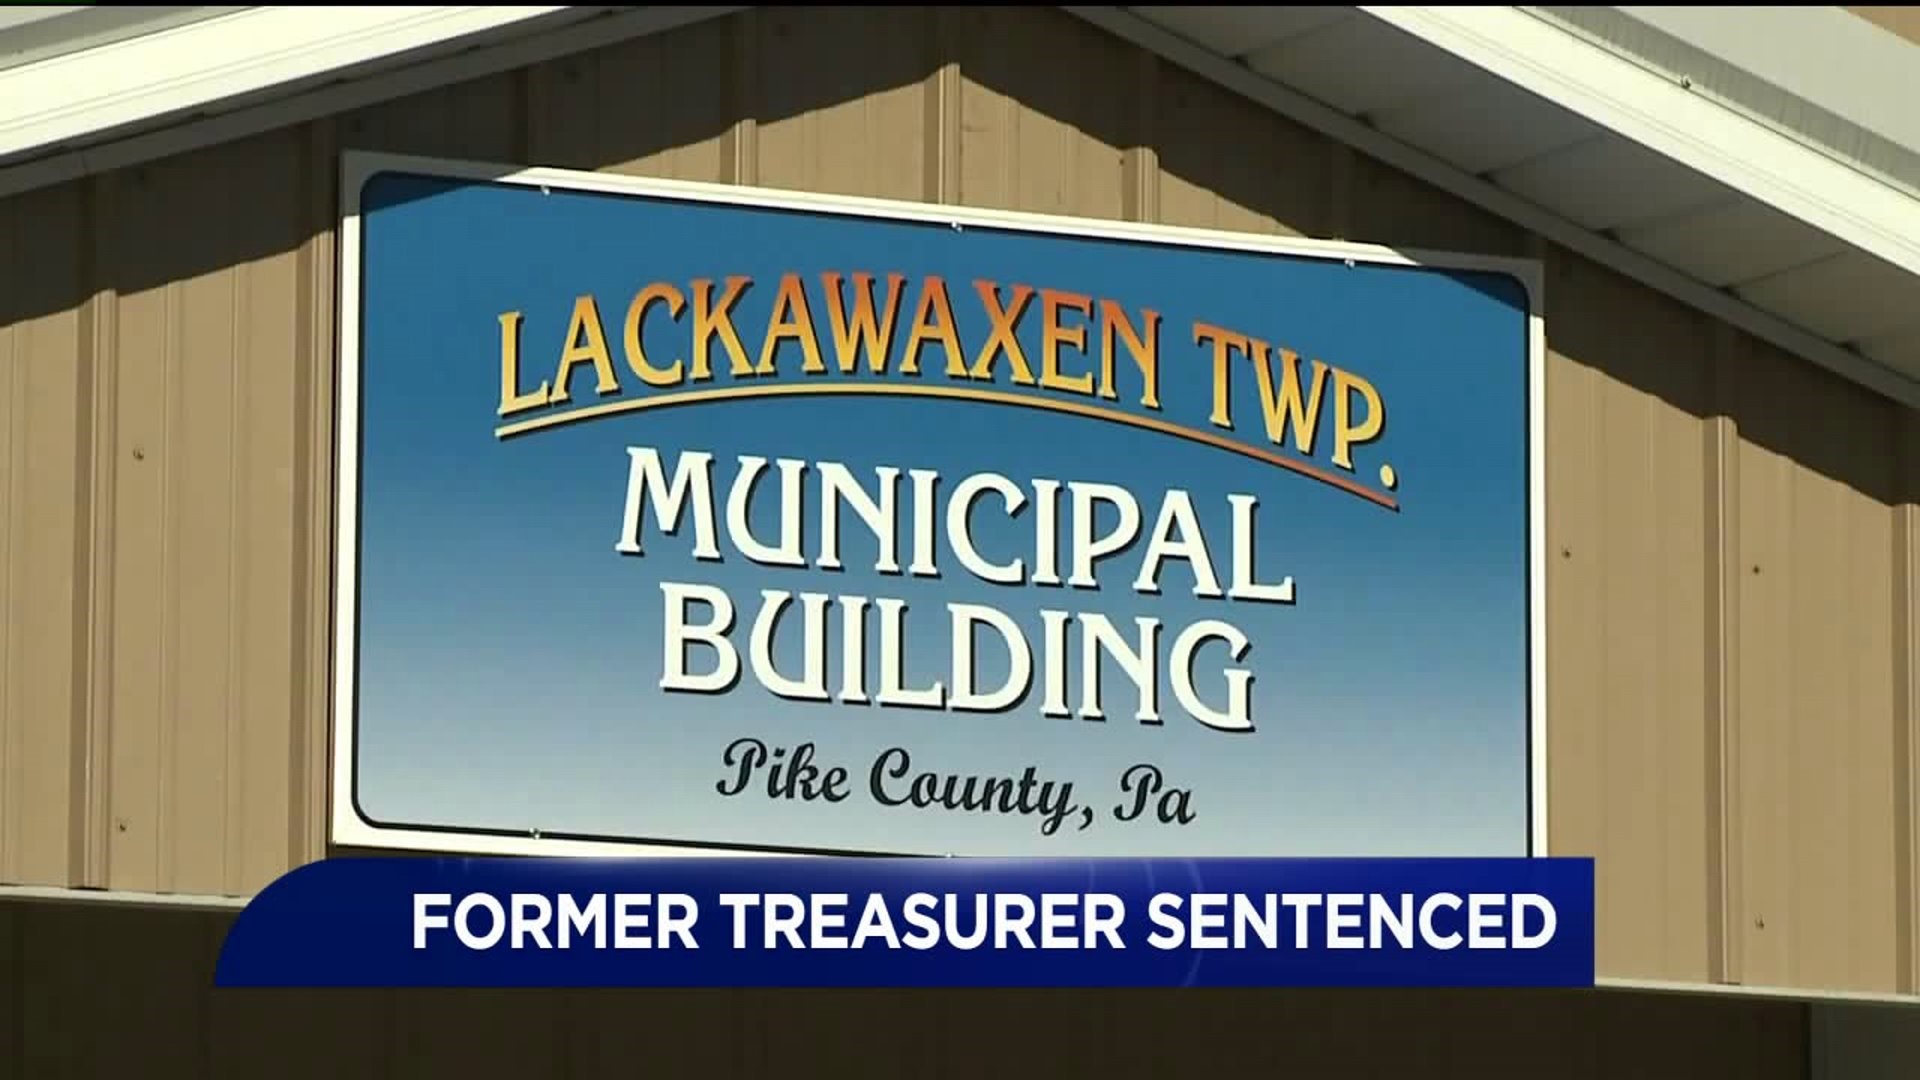 Former Township Treasurer Sentenced for Theft